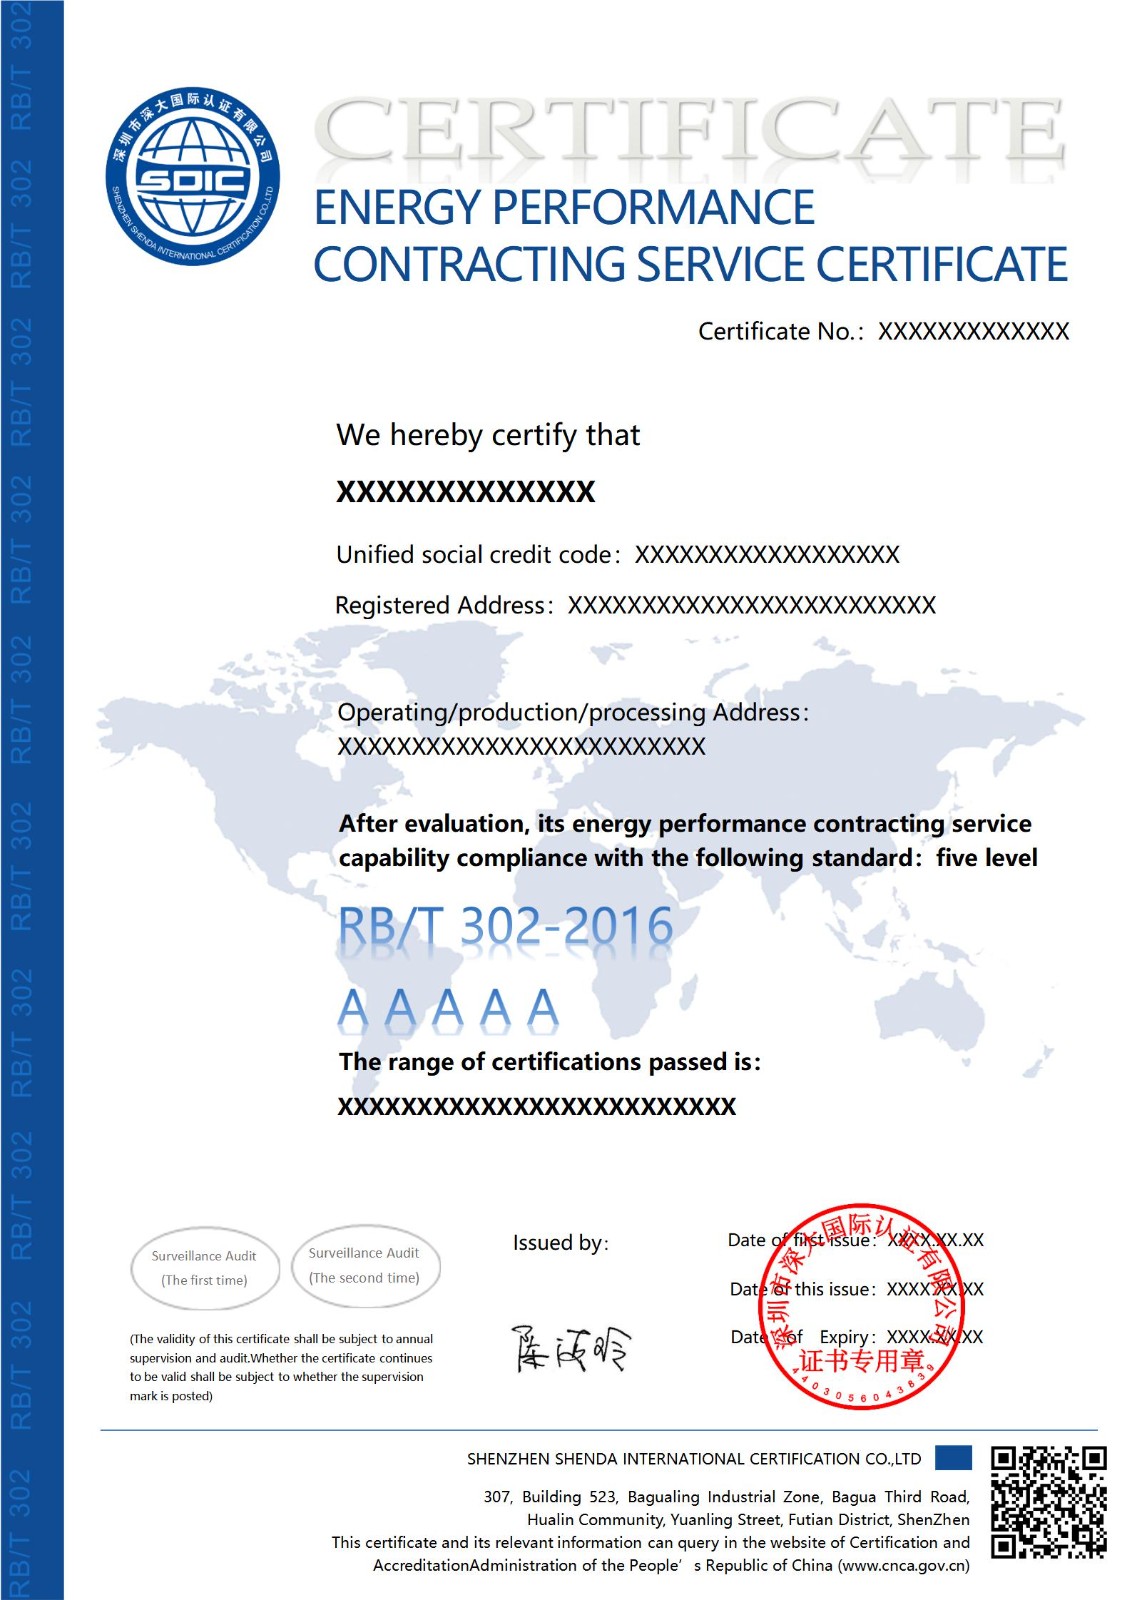 RB/T 302合同能源管理服务认证证书-英文版